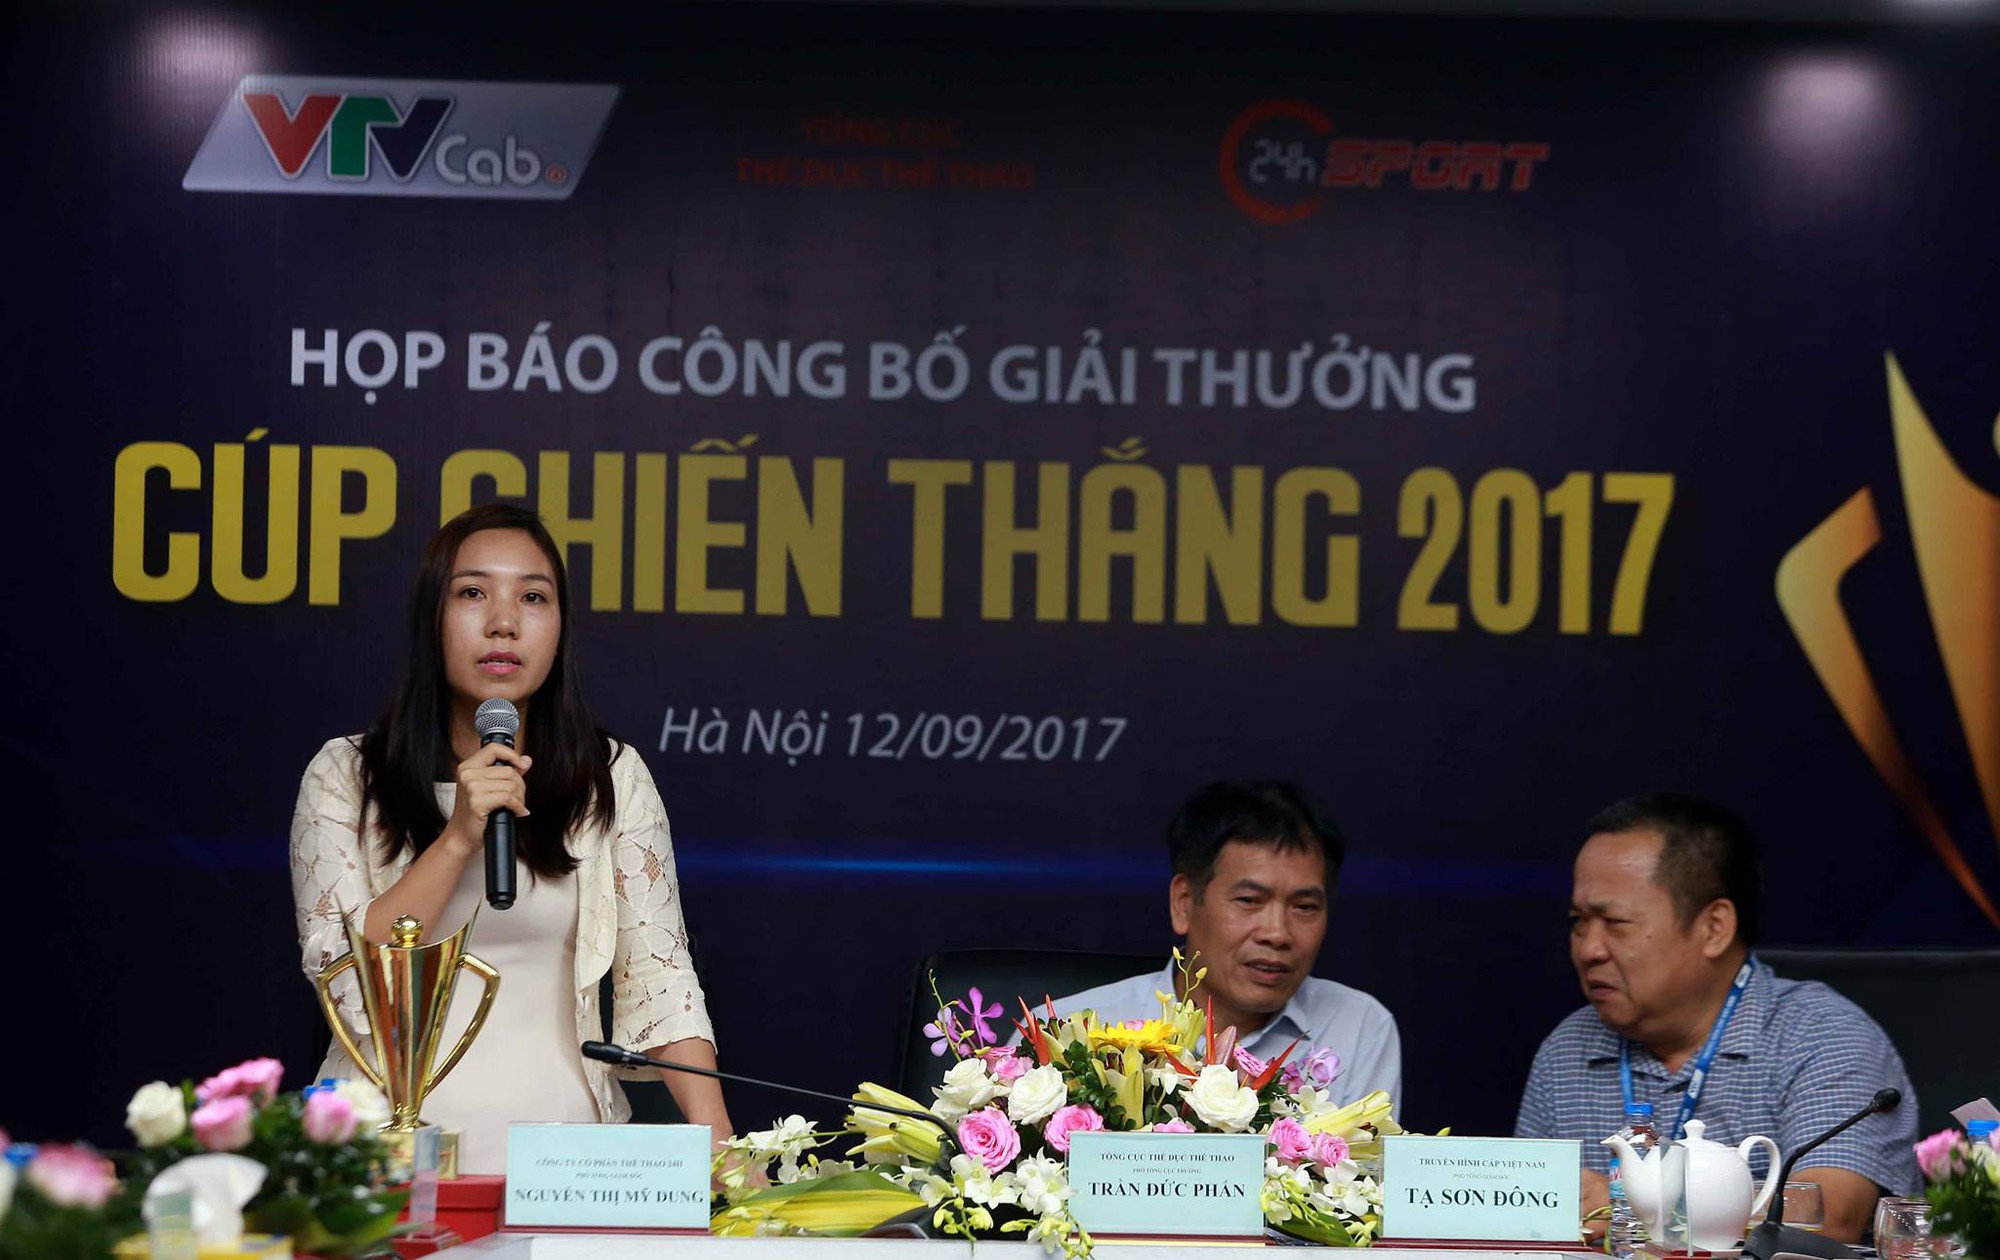 Bà Nguyễn Thị Mỹ Dung, Phó TGĐ Công ty cổ phần thể thao 24h (đơn vị chủ quản Webthethao.vn), đơn vị tổ chức Cúp Chiến thắng